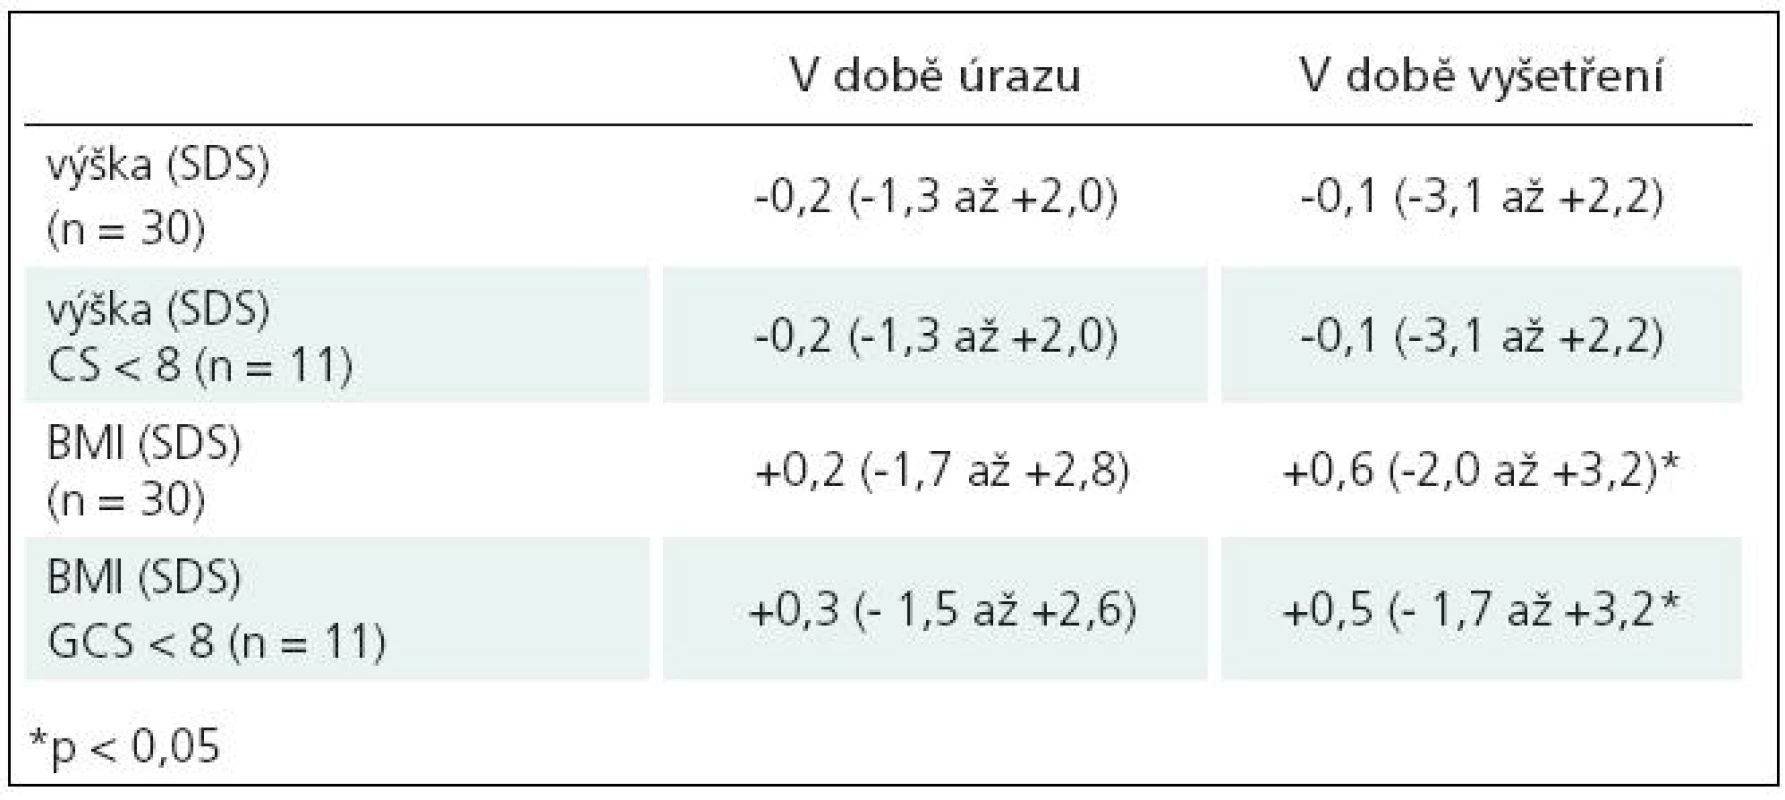 Srovnání auxologických parametrů v době úrazu a v době skríningového endokrinologického vyšetření.
